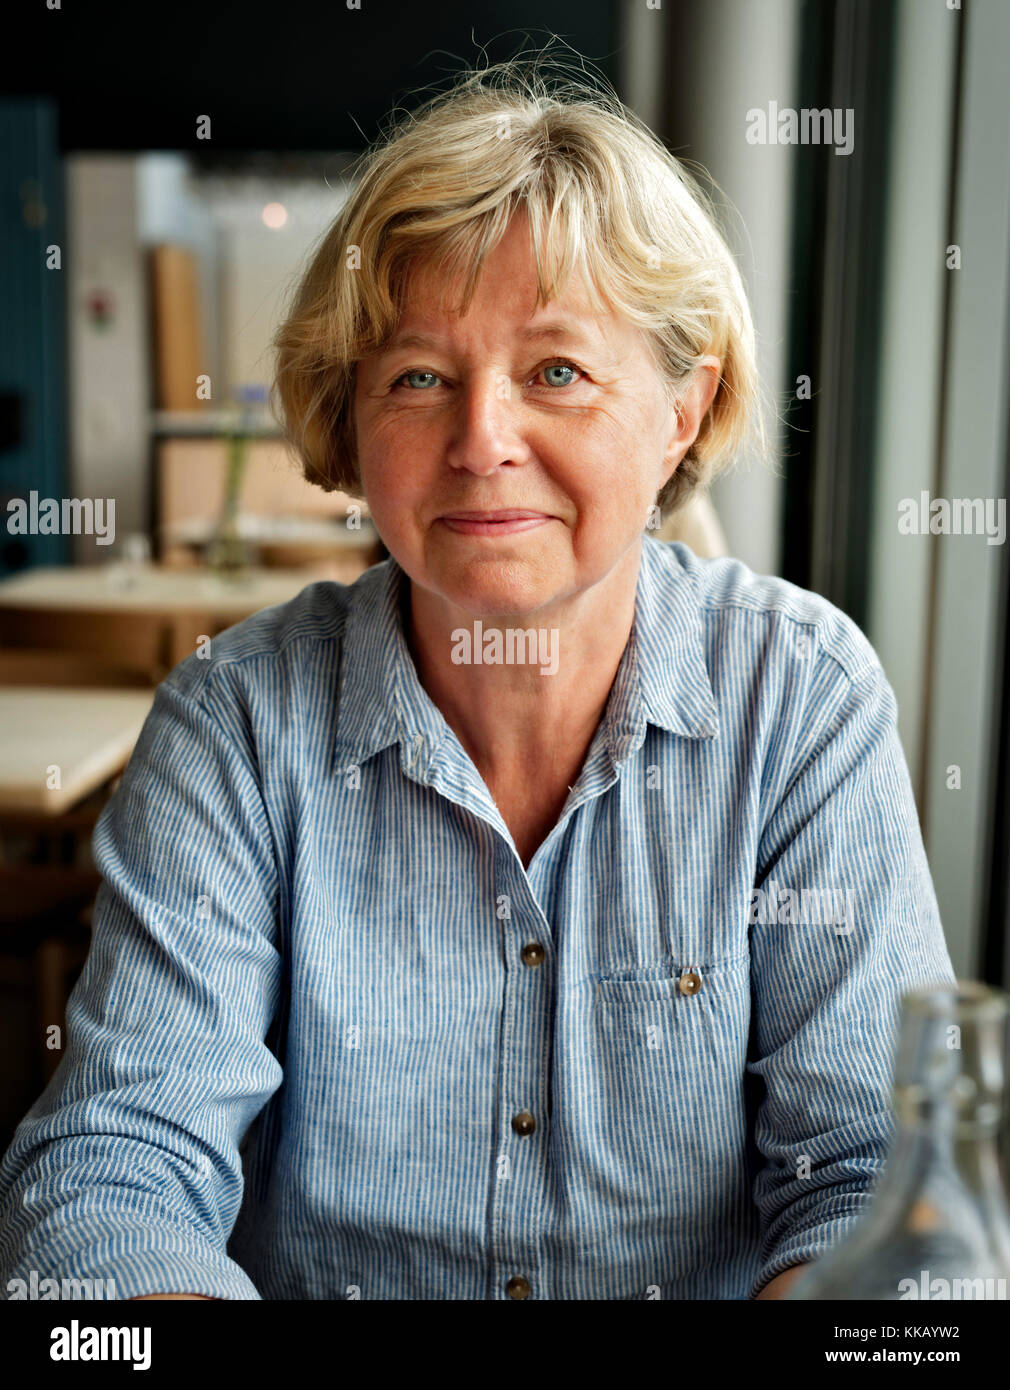 Lächelnde blonde Frau in einem Restaurant. Alter 55-65 Stockfoto